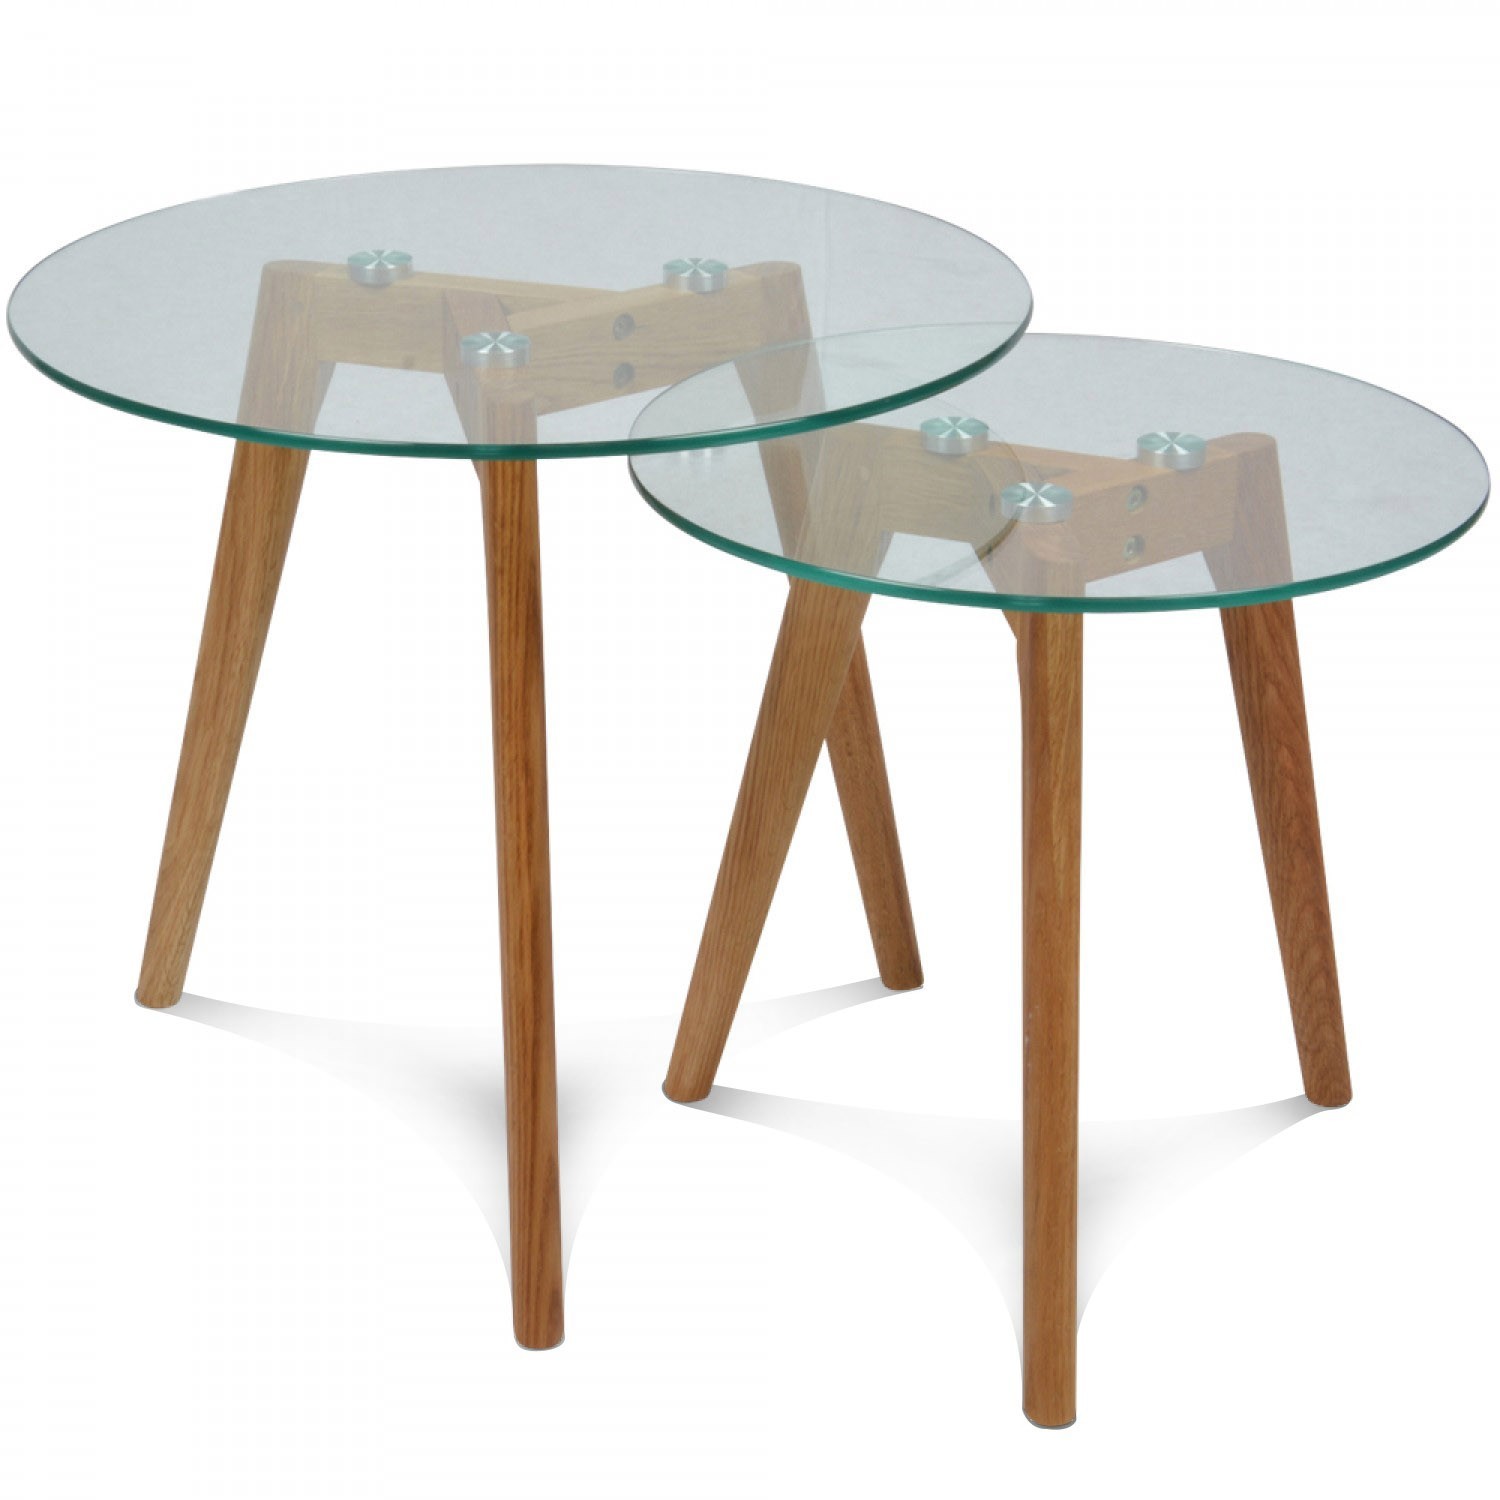 Petite table basse bois et verre